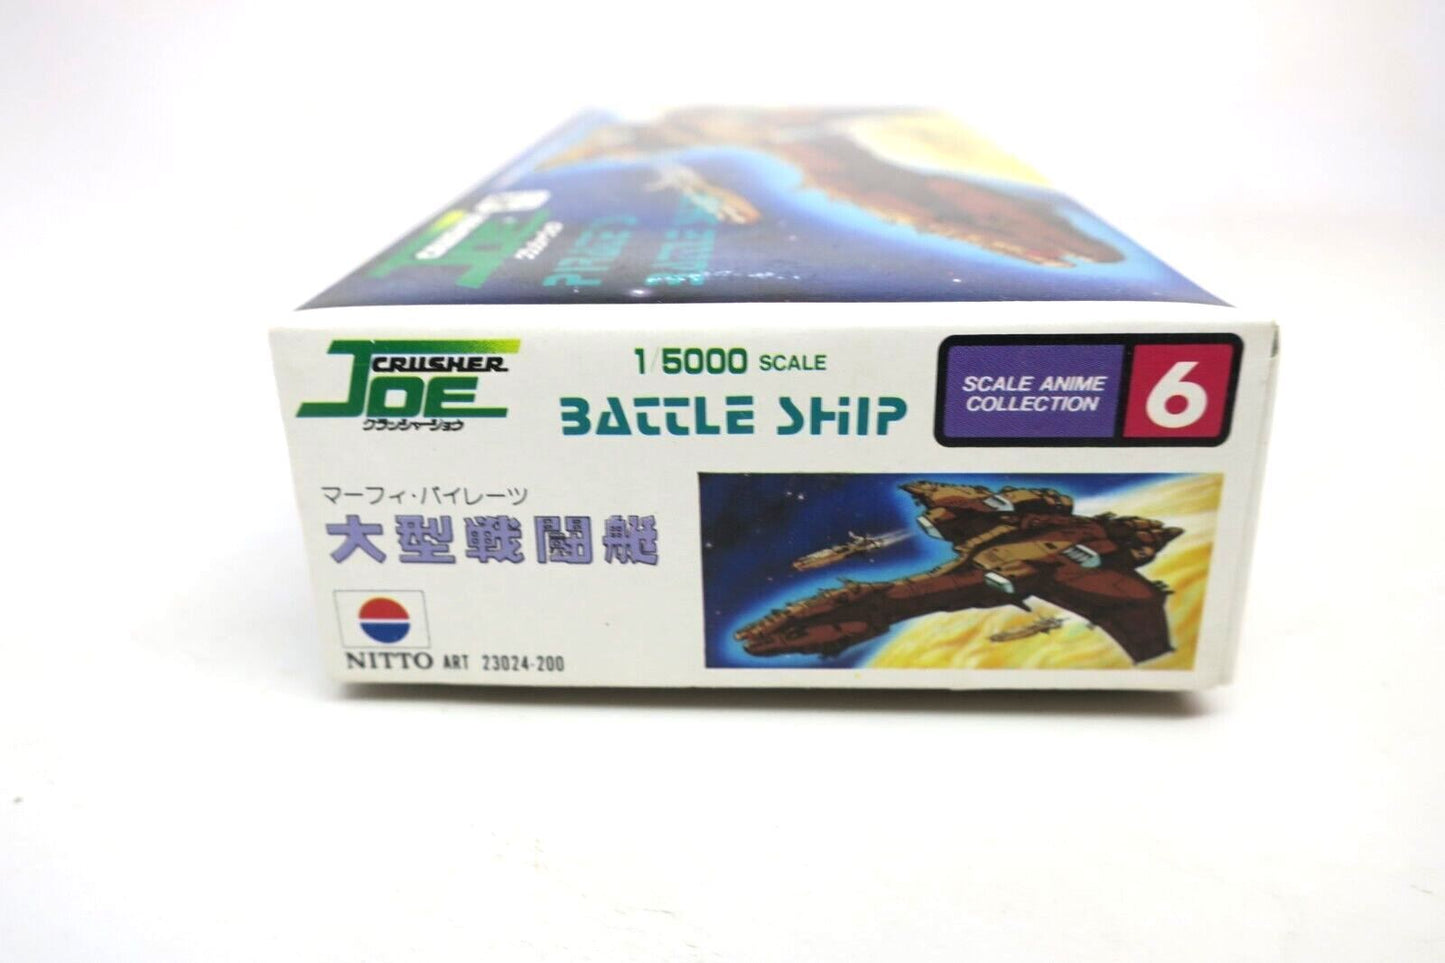 Takara Nitto Crusher Joe Pirate's Battleship 1/5000 Model kit 23024 B9